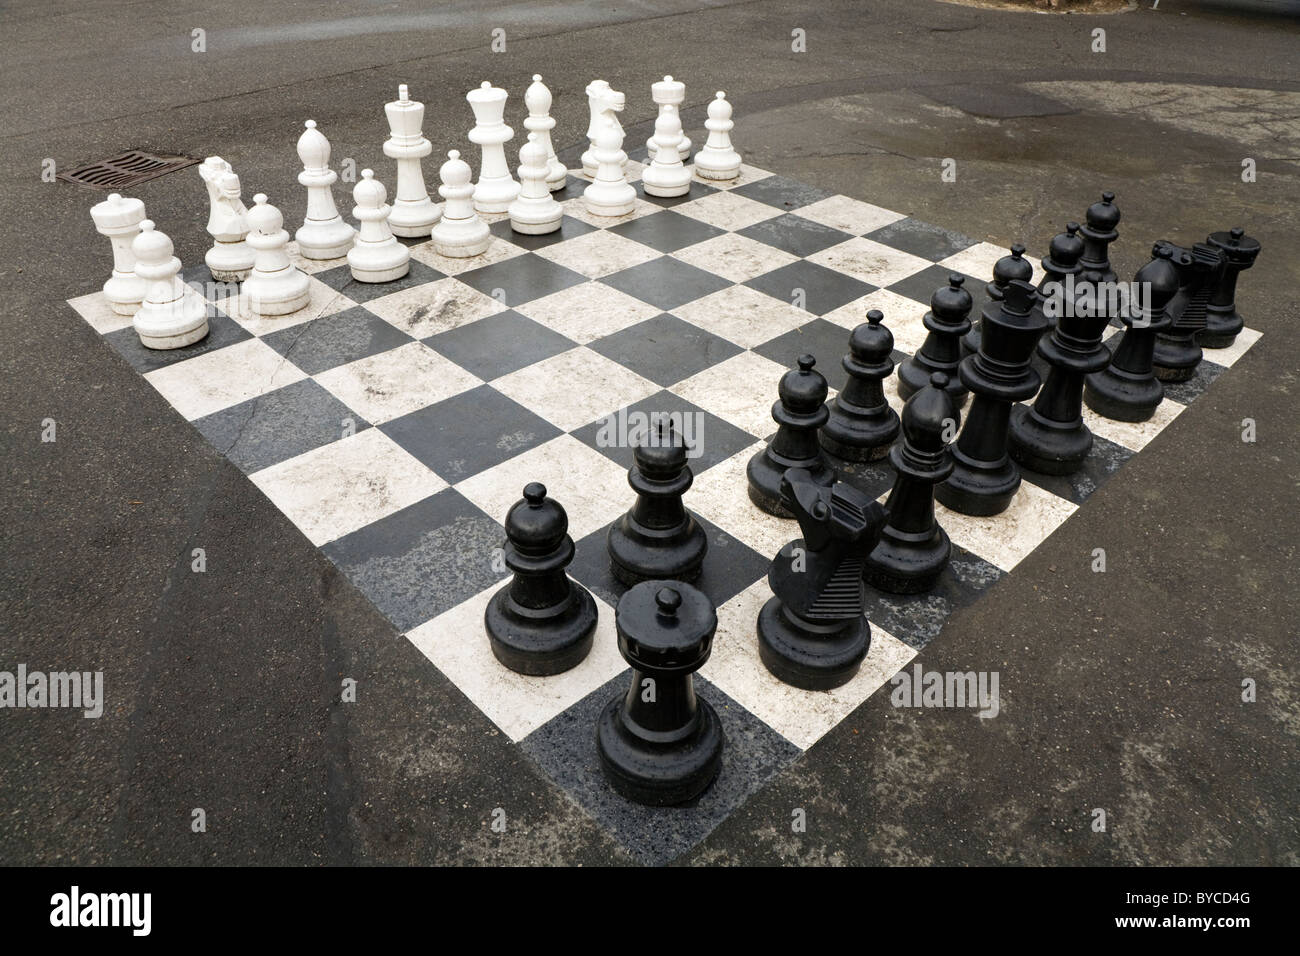 Pezzi esposti per avviare / iniziare un gioco di grandi / grande / giant / scacchi grandi in un parco pubblico a Ginevra / Geneve, Svizzera Foto Stock